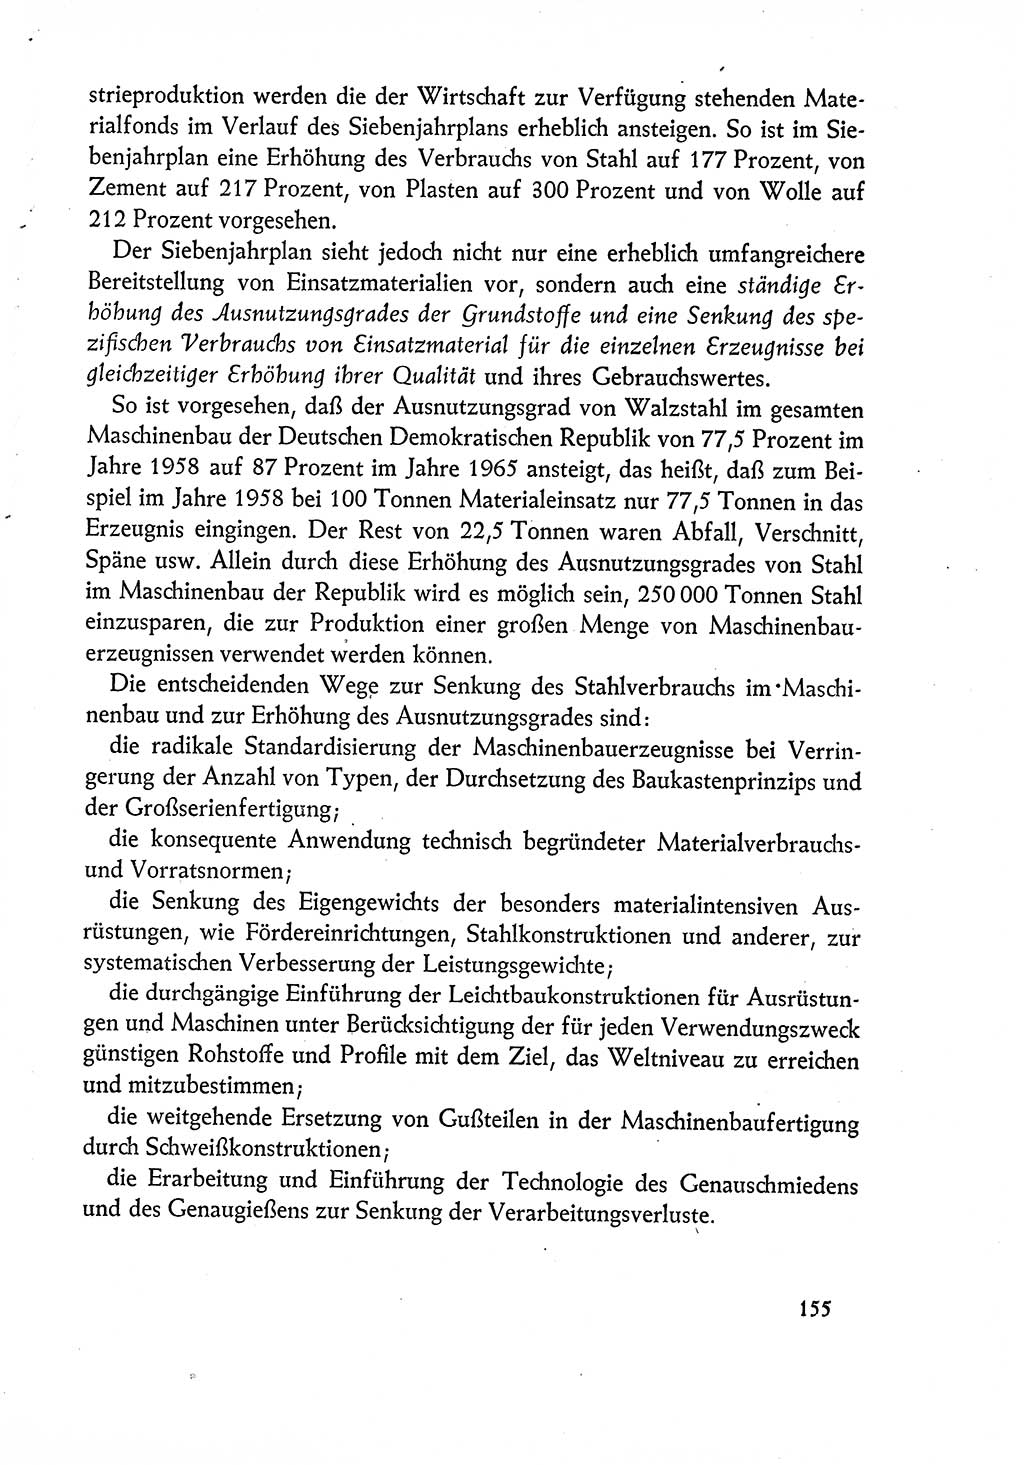 Dokumente der Sozialistischen Einheitspartei Deutschlands (SED) [Deutsche Demokratische Republik (DDR)] 1960-1961, Seite 155 (Dok. SED DDR 1960-1961, S. 155)